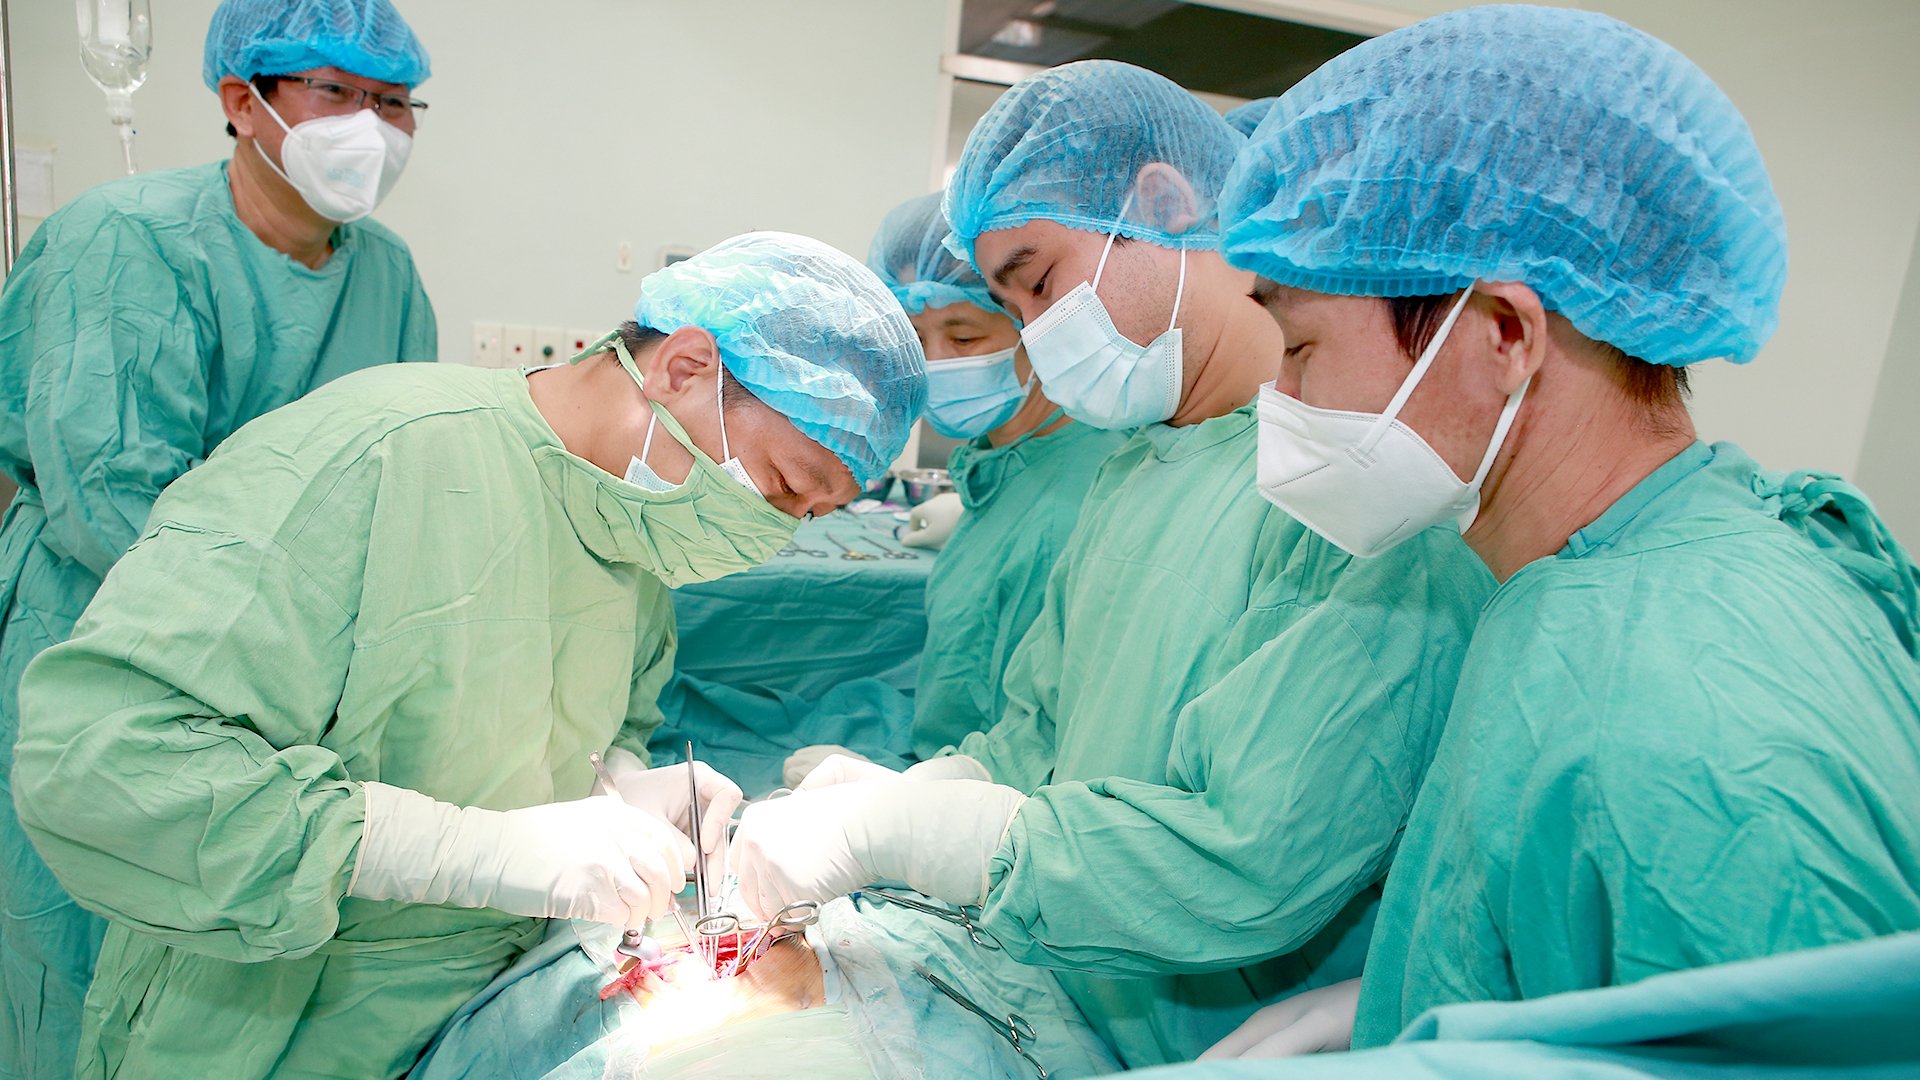 Ca phẫu thuật ghép thận cho 2 bệnh nhận đồng thời diễn ra sau từ người hiến tạng đã chết não